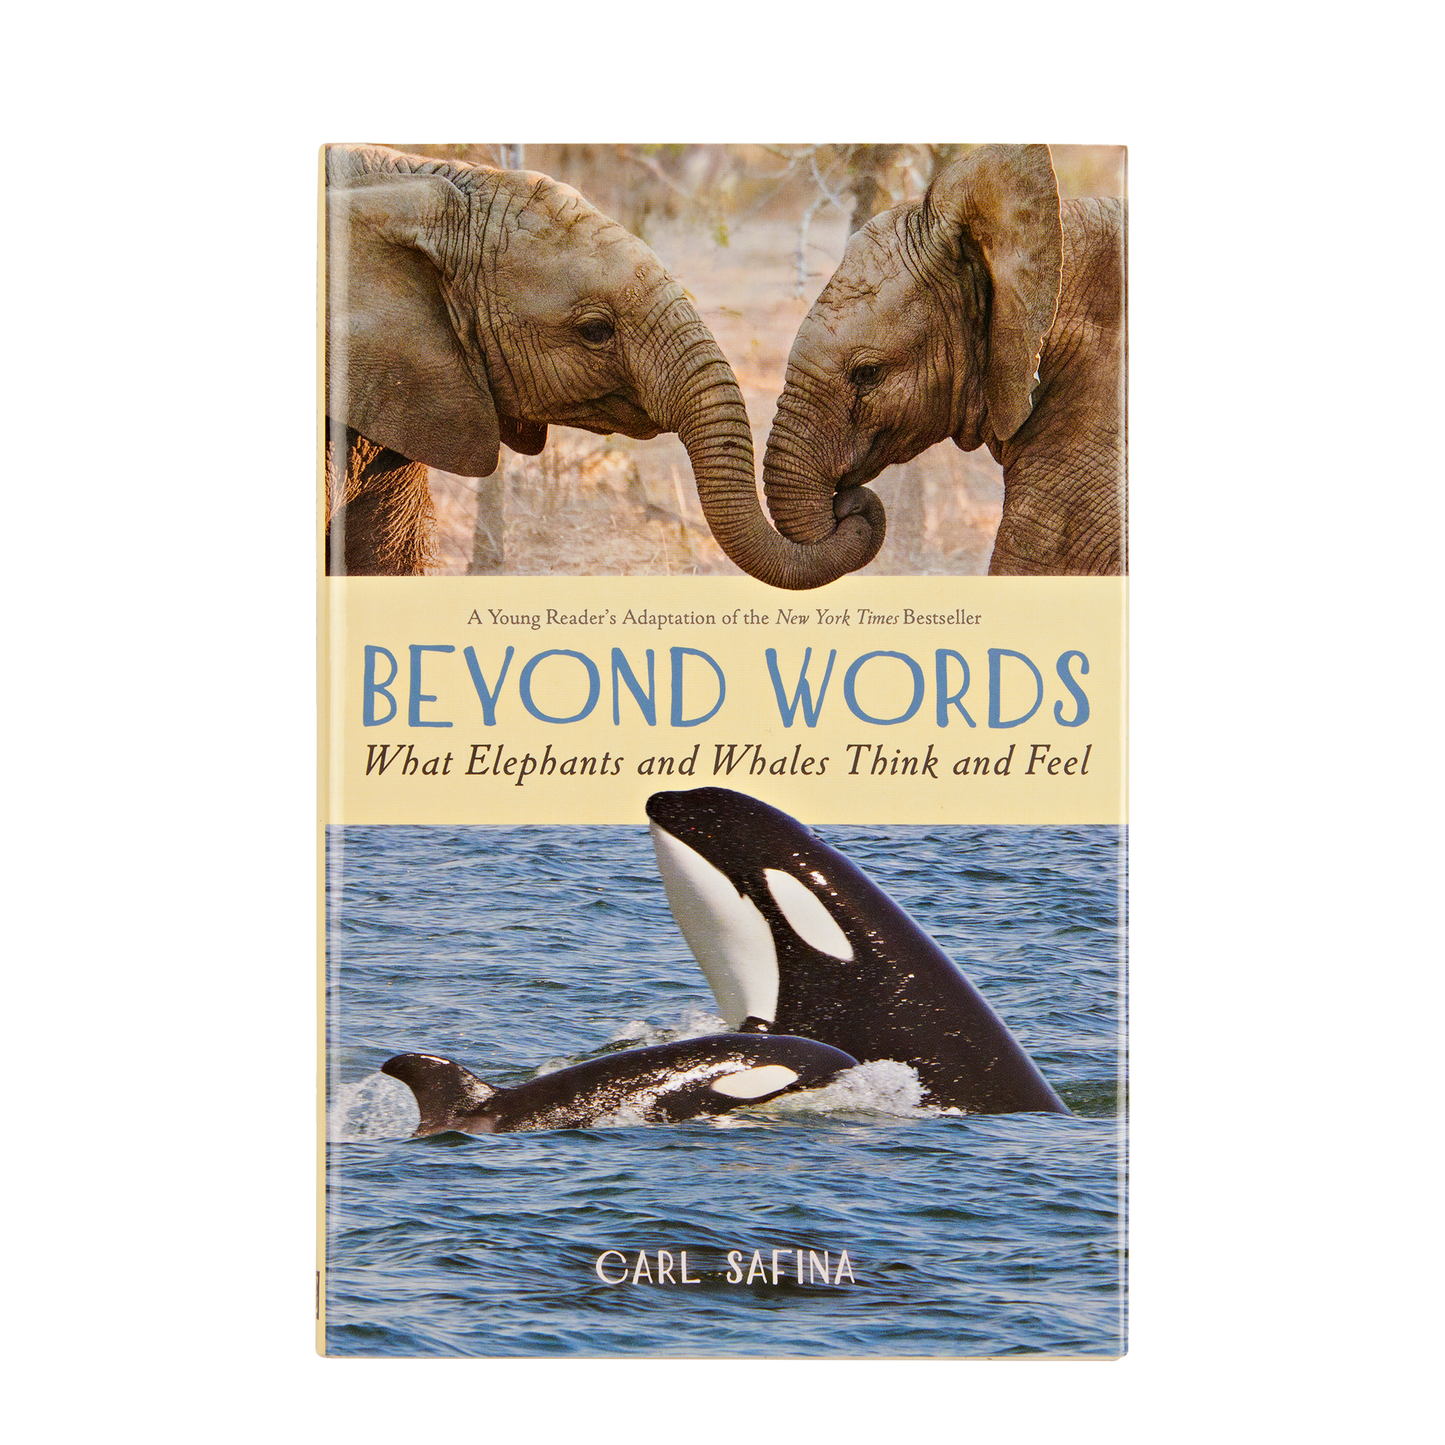 Au-delà des mots - Ce que pensent et ressentent les éléphants et les baleines